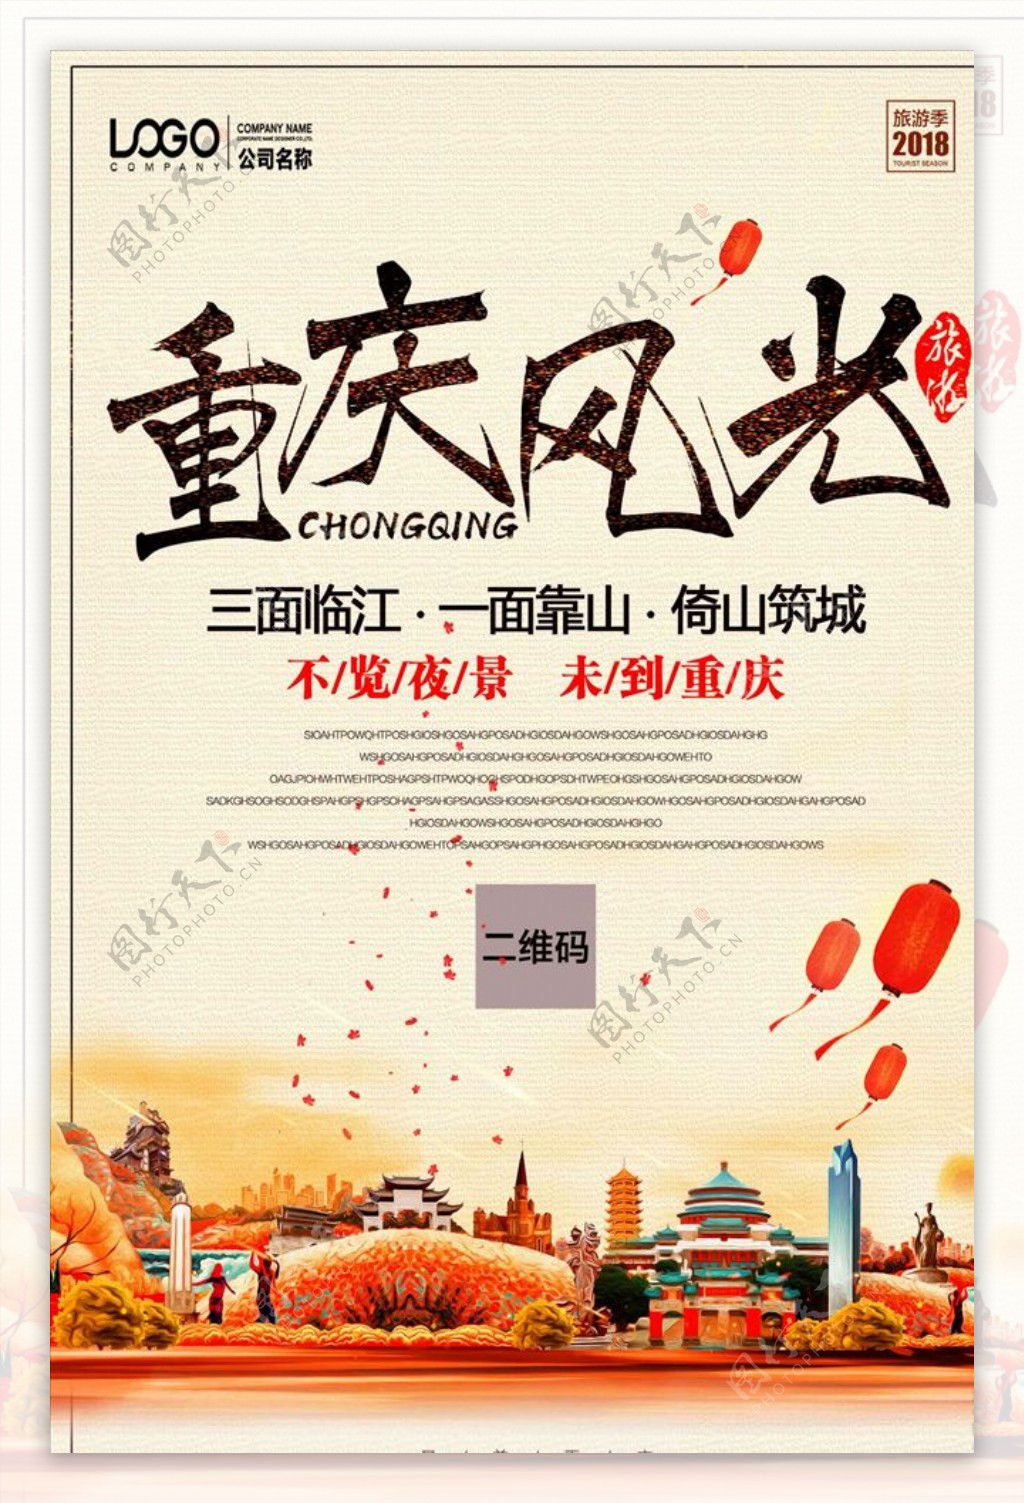 重庆风管旅游海报